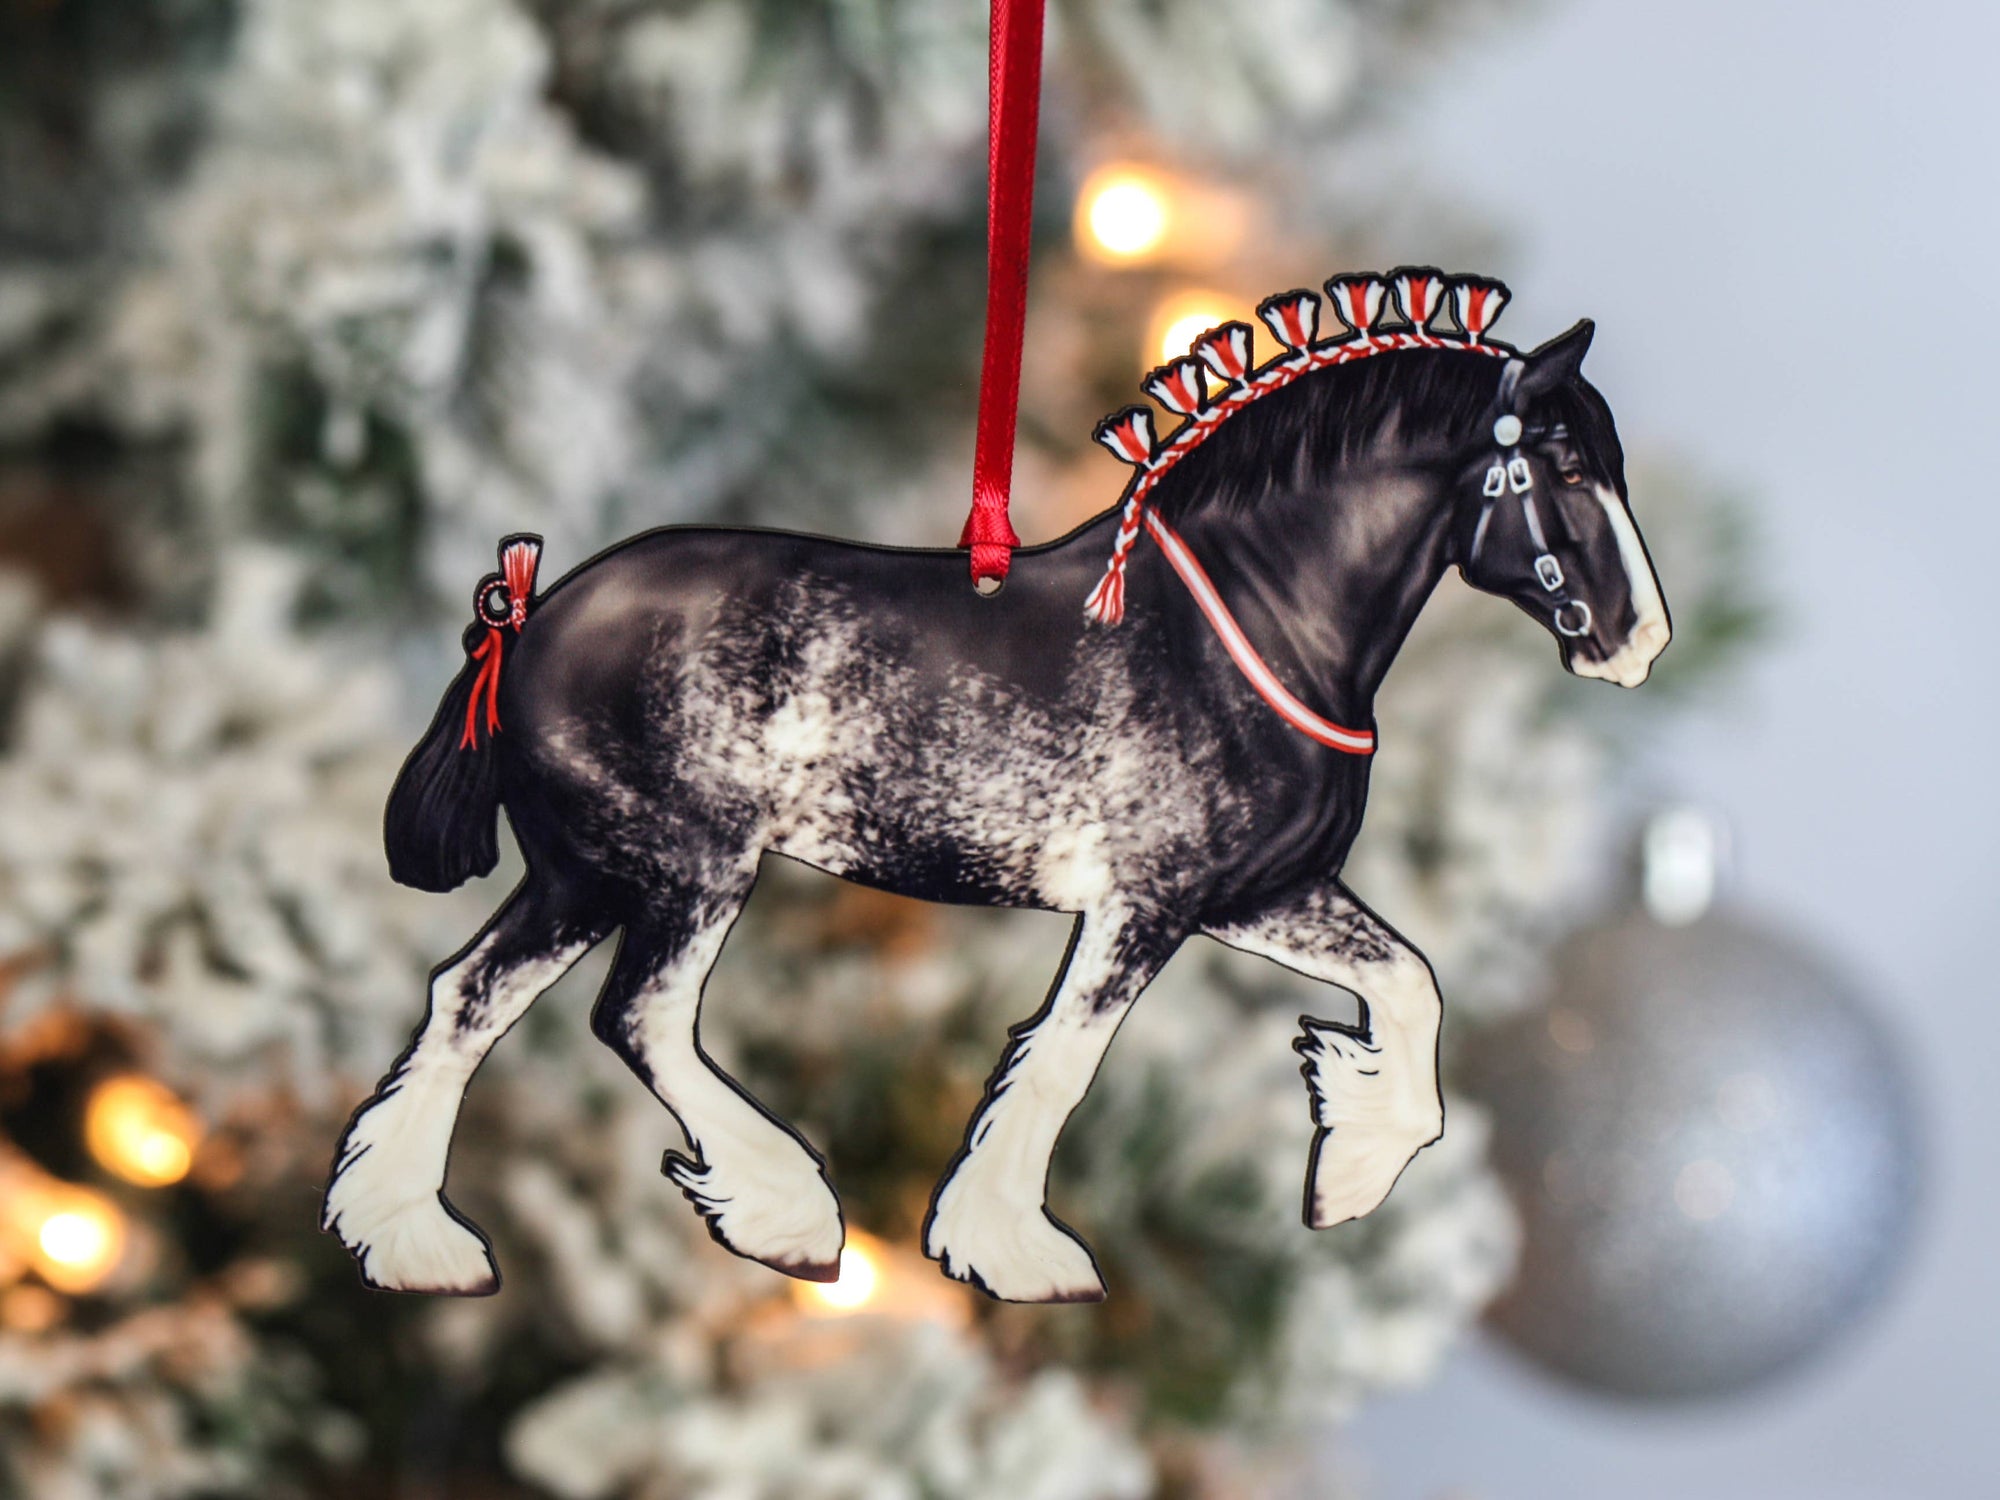 CHRISTMAS ORNAMENT BONNER'S GLASS BLACK HORSE